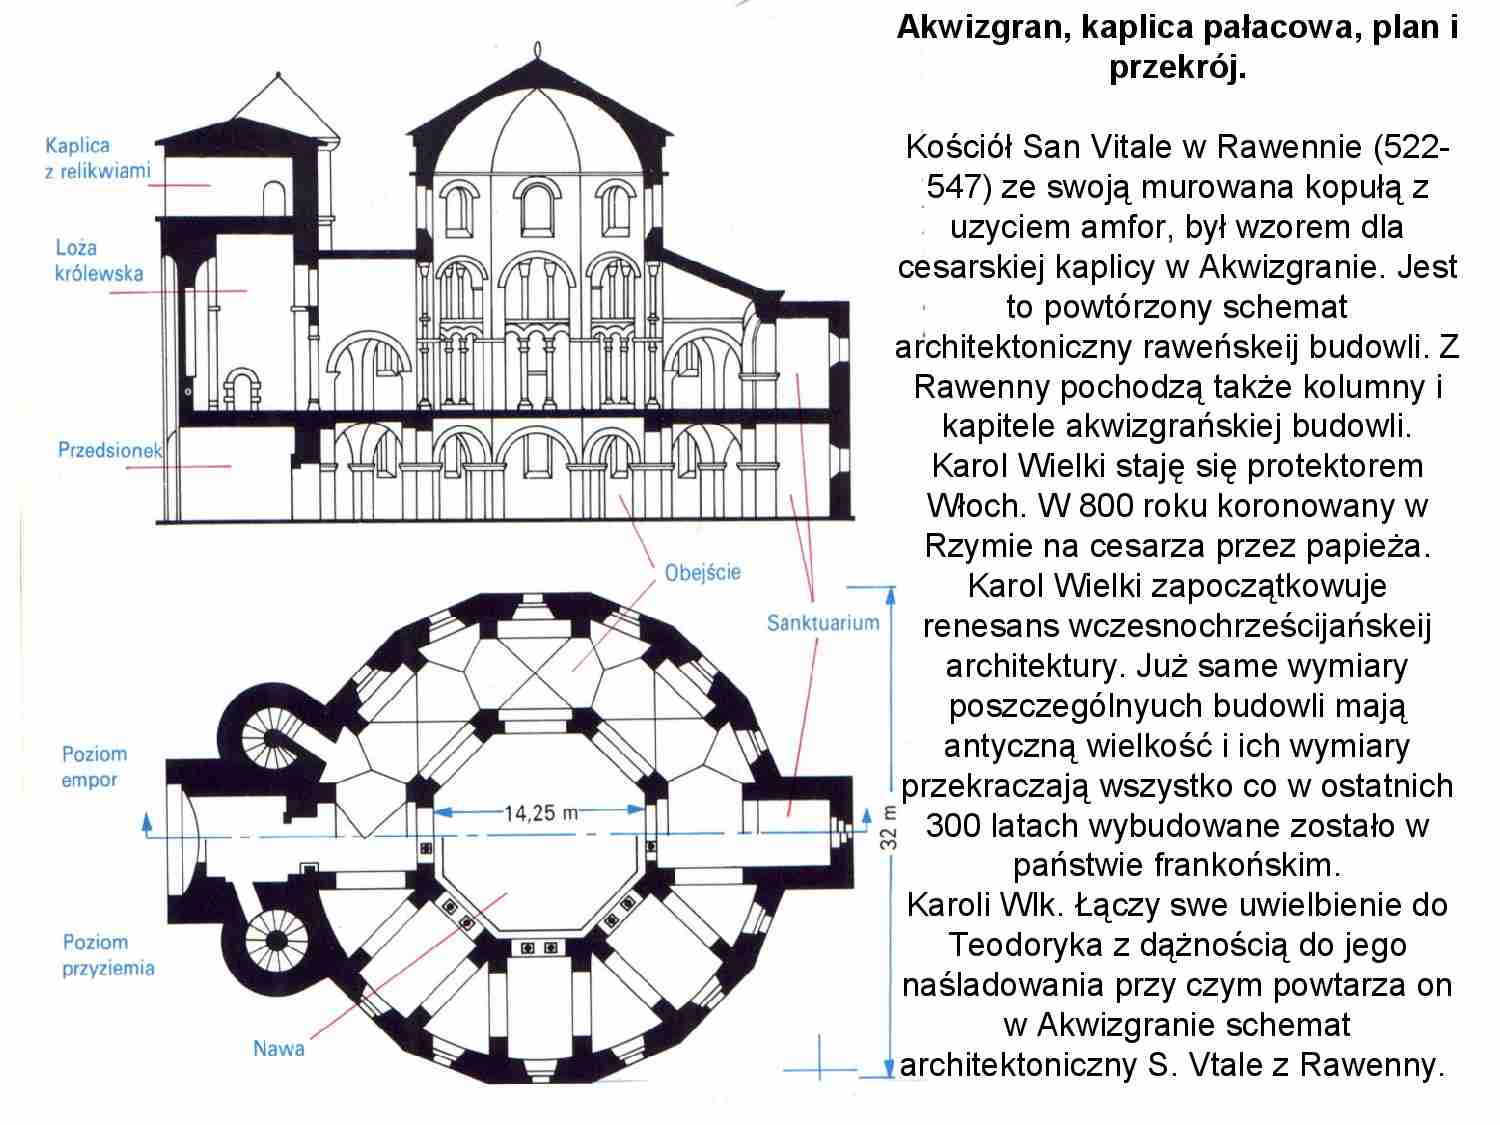 Architektura karolińska  - strona 1